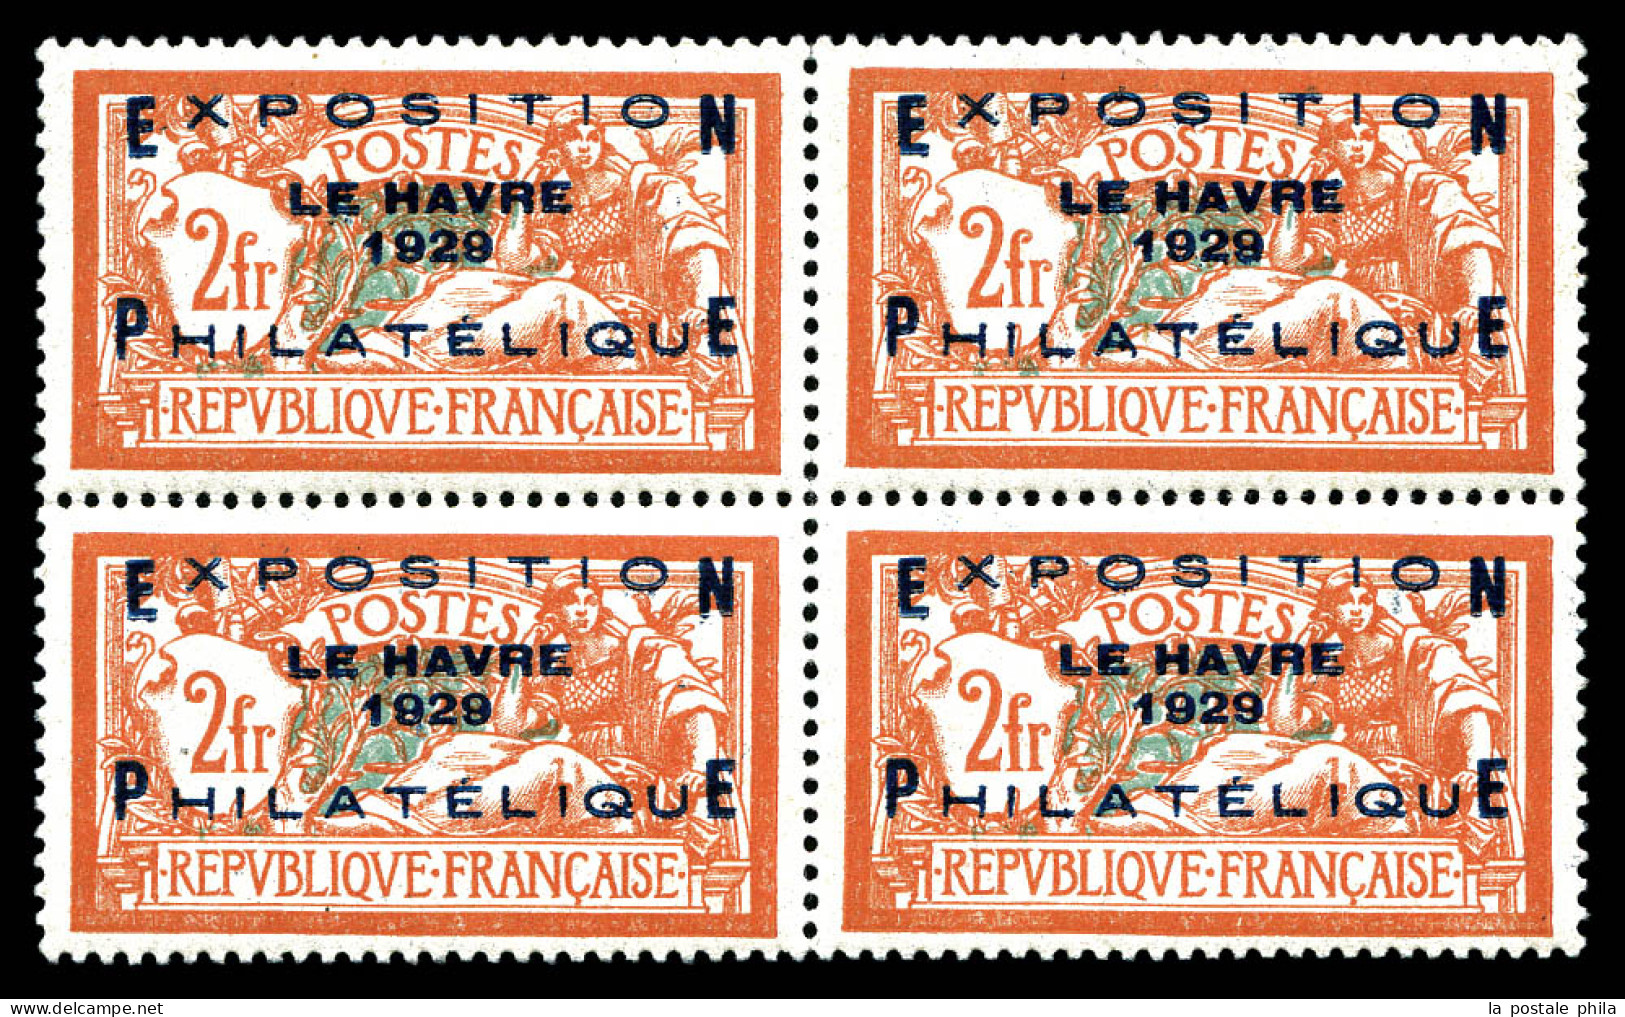 ** N°257A, Exposition Du Havre 1929 En Bloc De Quatre, Fraîcheur Postale, Très Bon Centrage. SUP. R.R. (certificat)  Qua - Unused Stamps